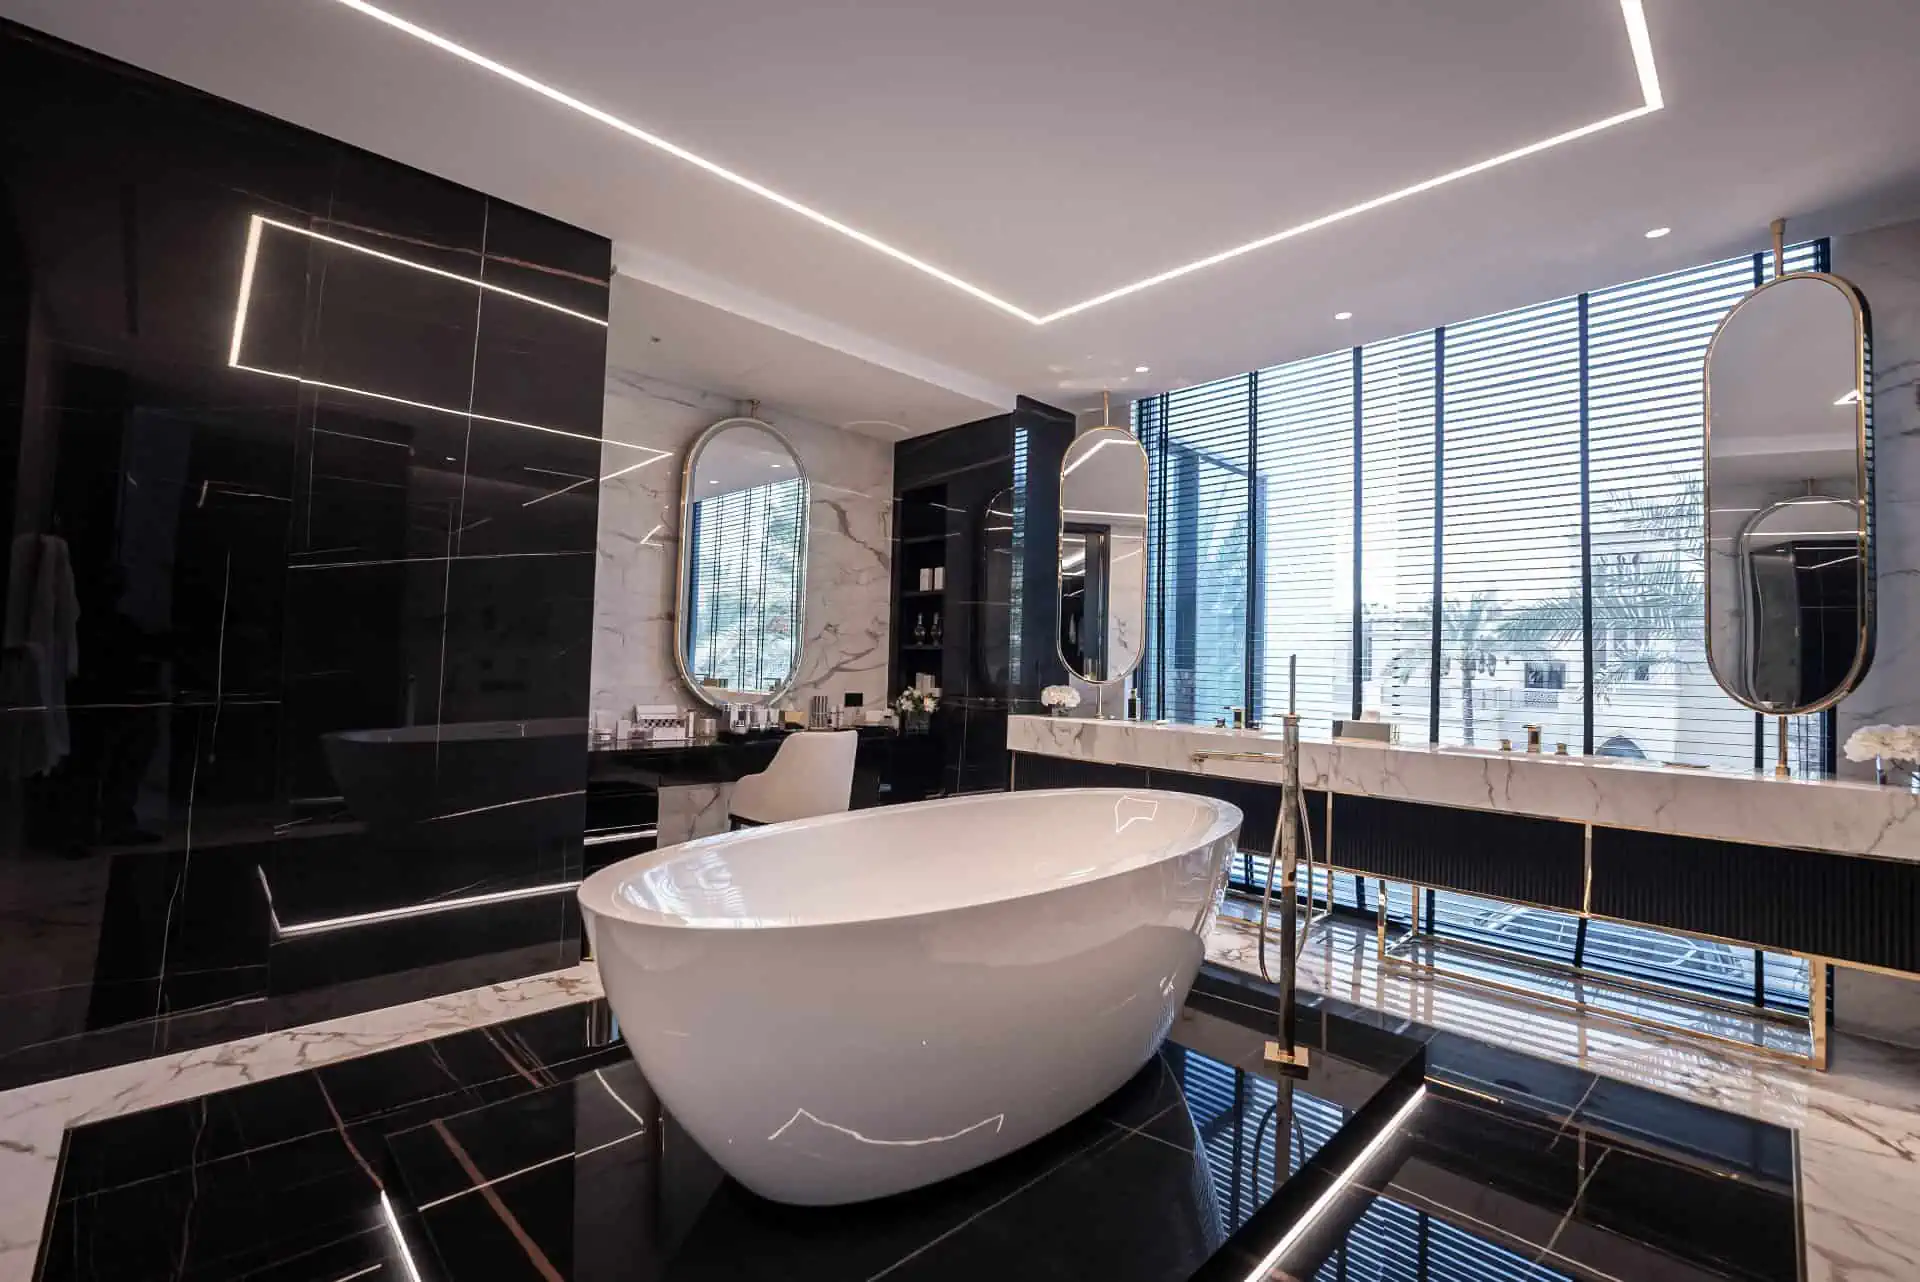 a bathroom with a bathtub, sink and few mirrors